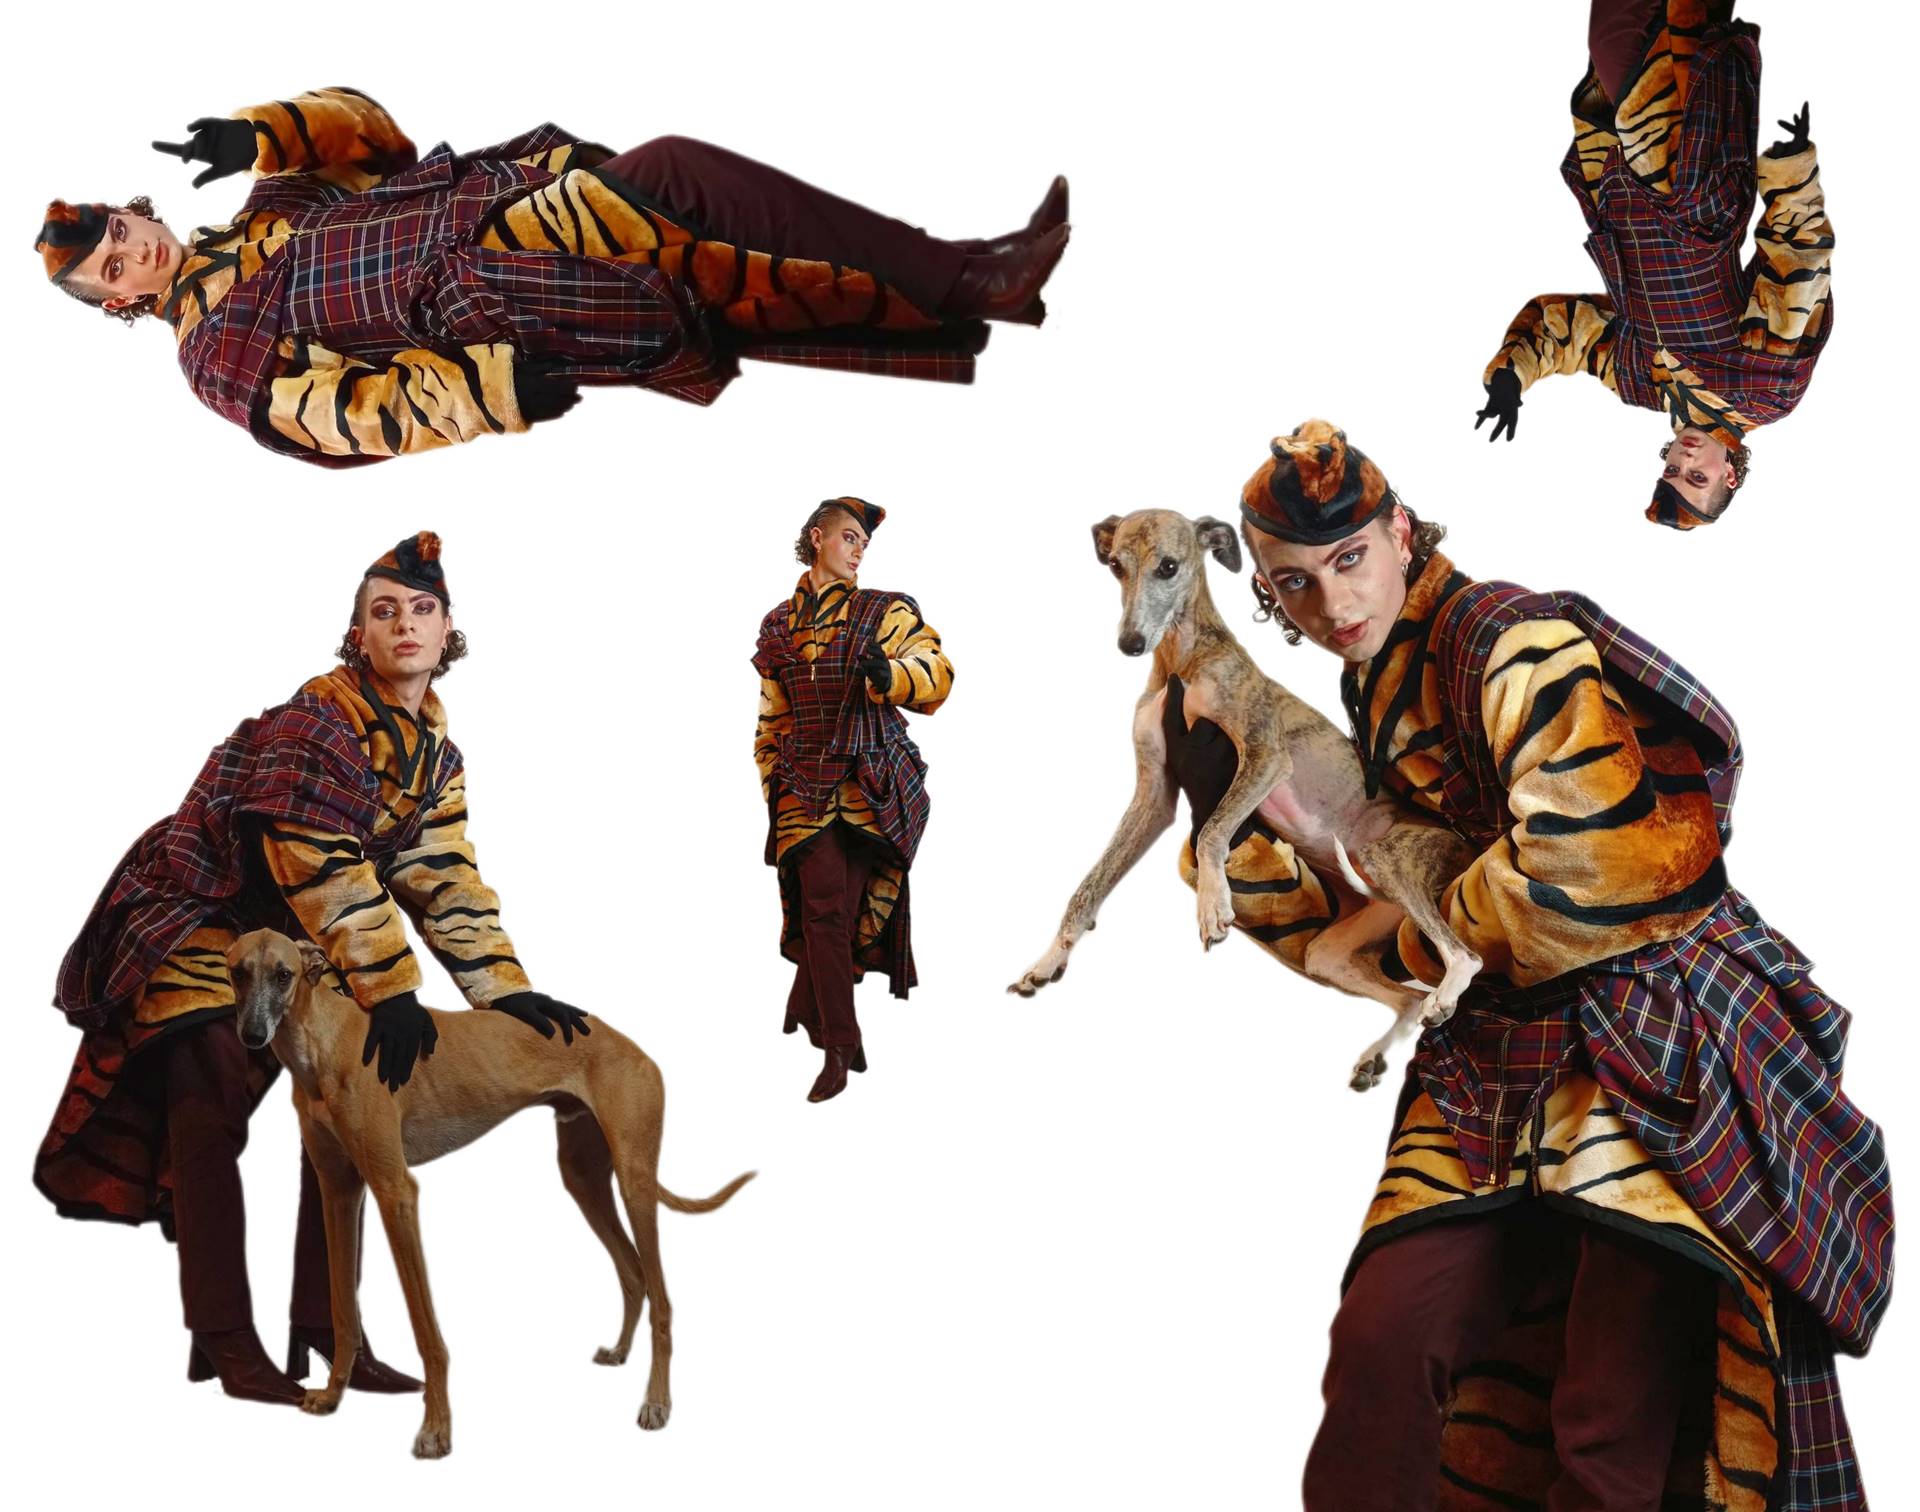 Kompozycja ze zdjęć mężczyzny w ubiorze w kratę i wzór tygrysa pozującego z psem. Białe tło